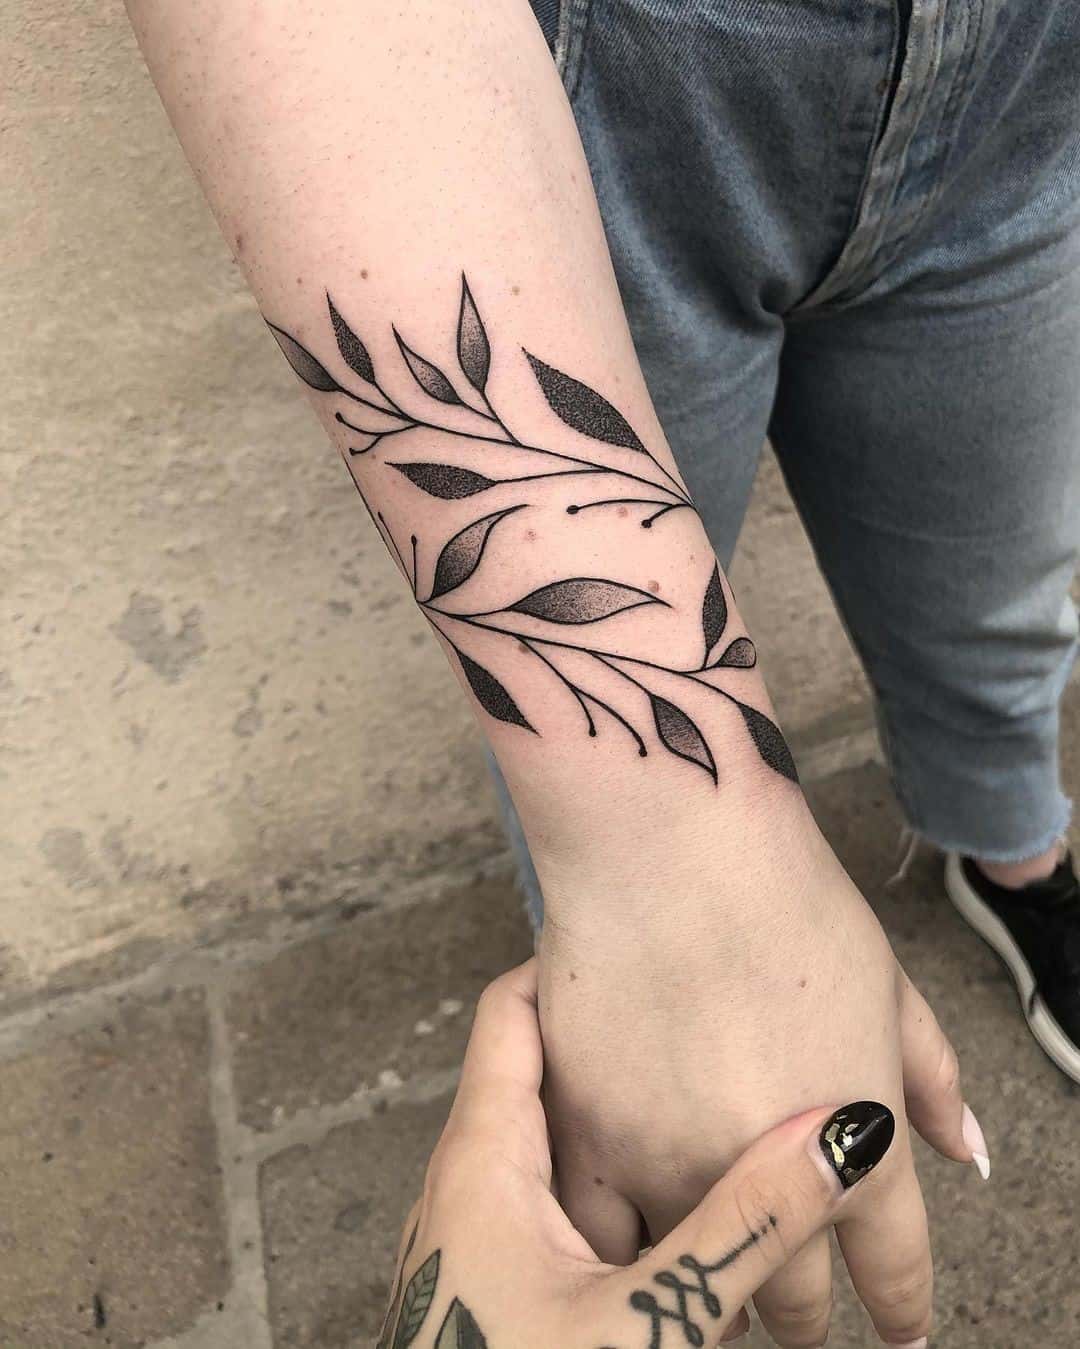 Flower bracelet scar cover tattoo.